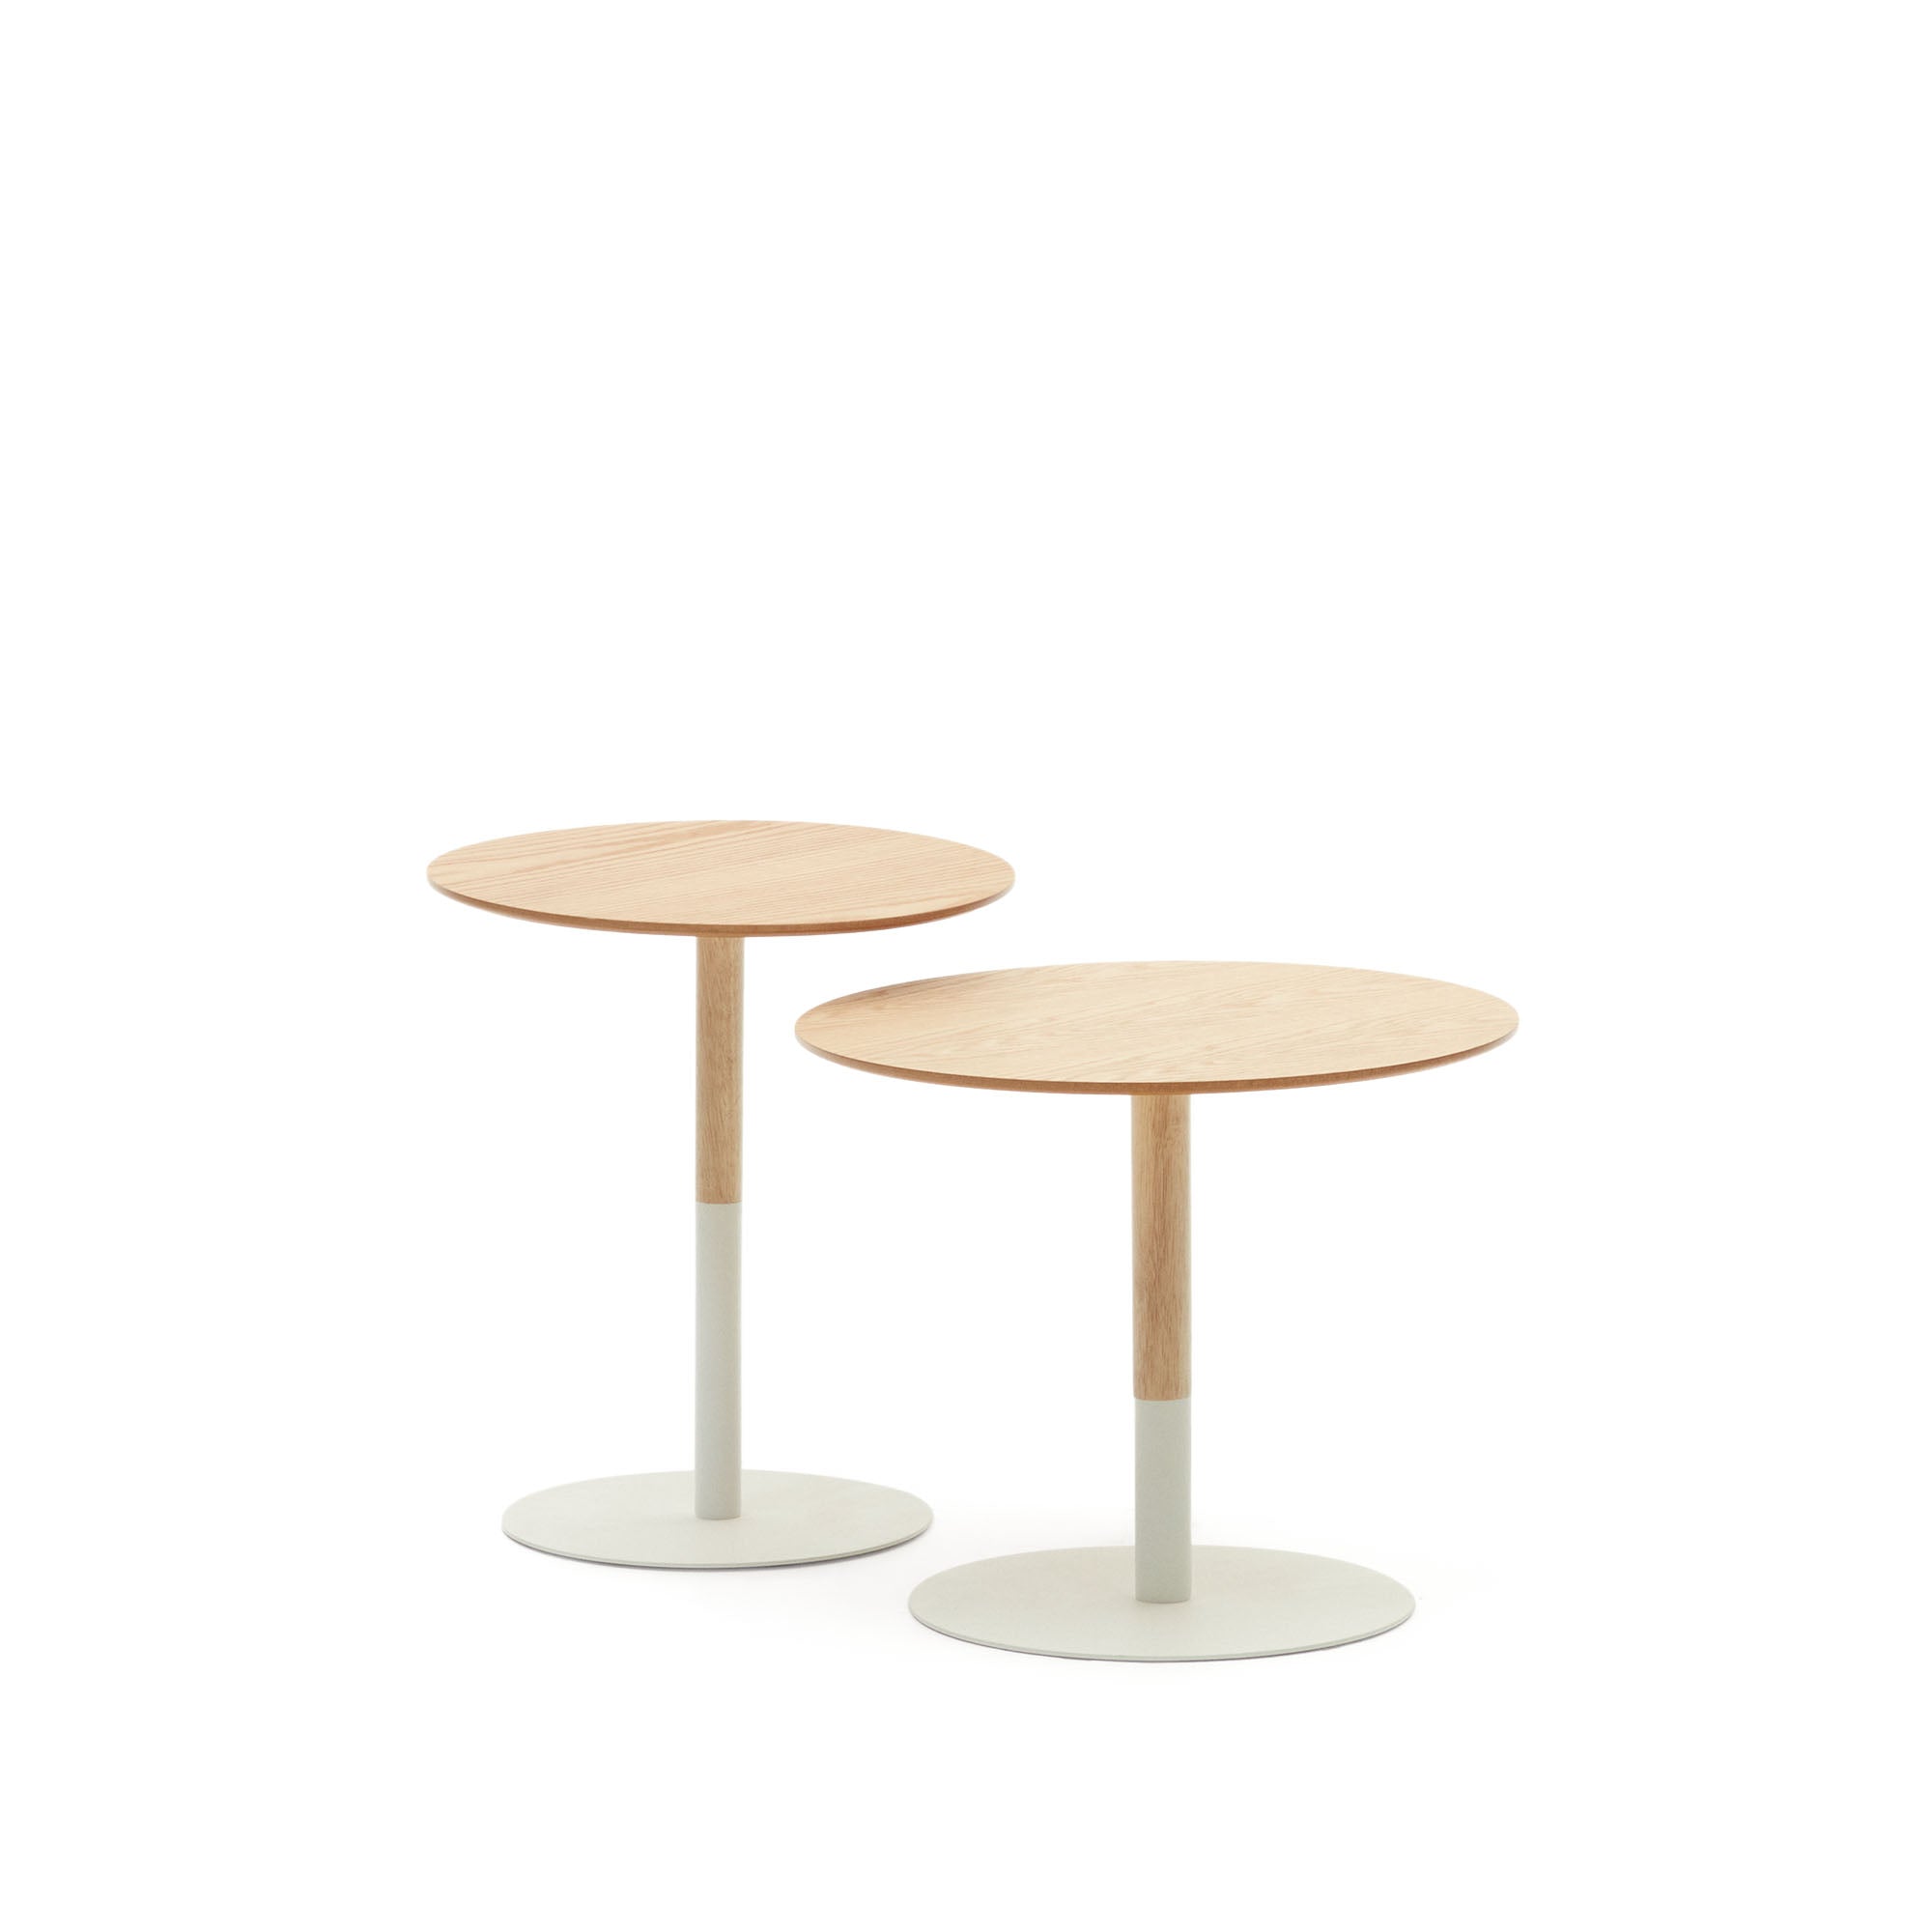 Watse set of 2 side tables in oak wood veneer and matte white metal, Ø 40 cm/Ø 48 cm